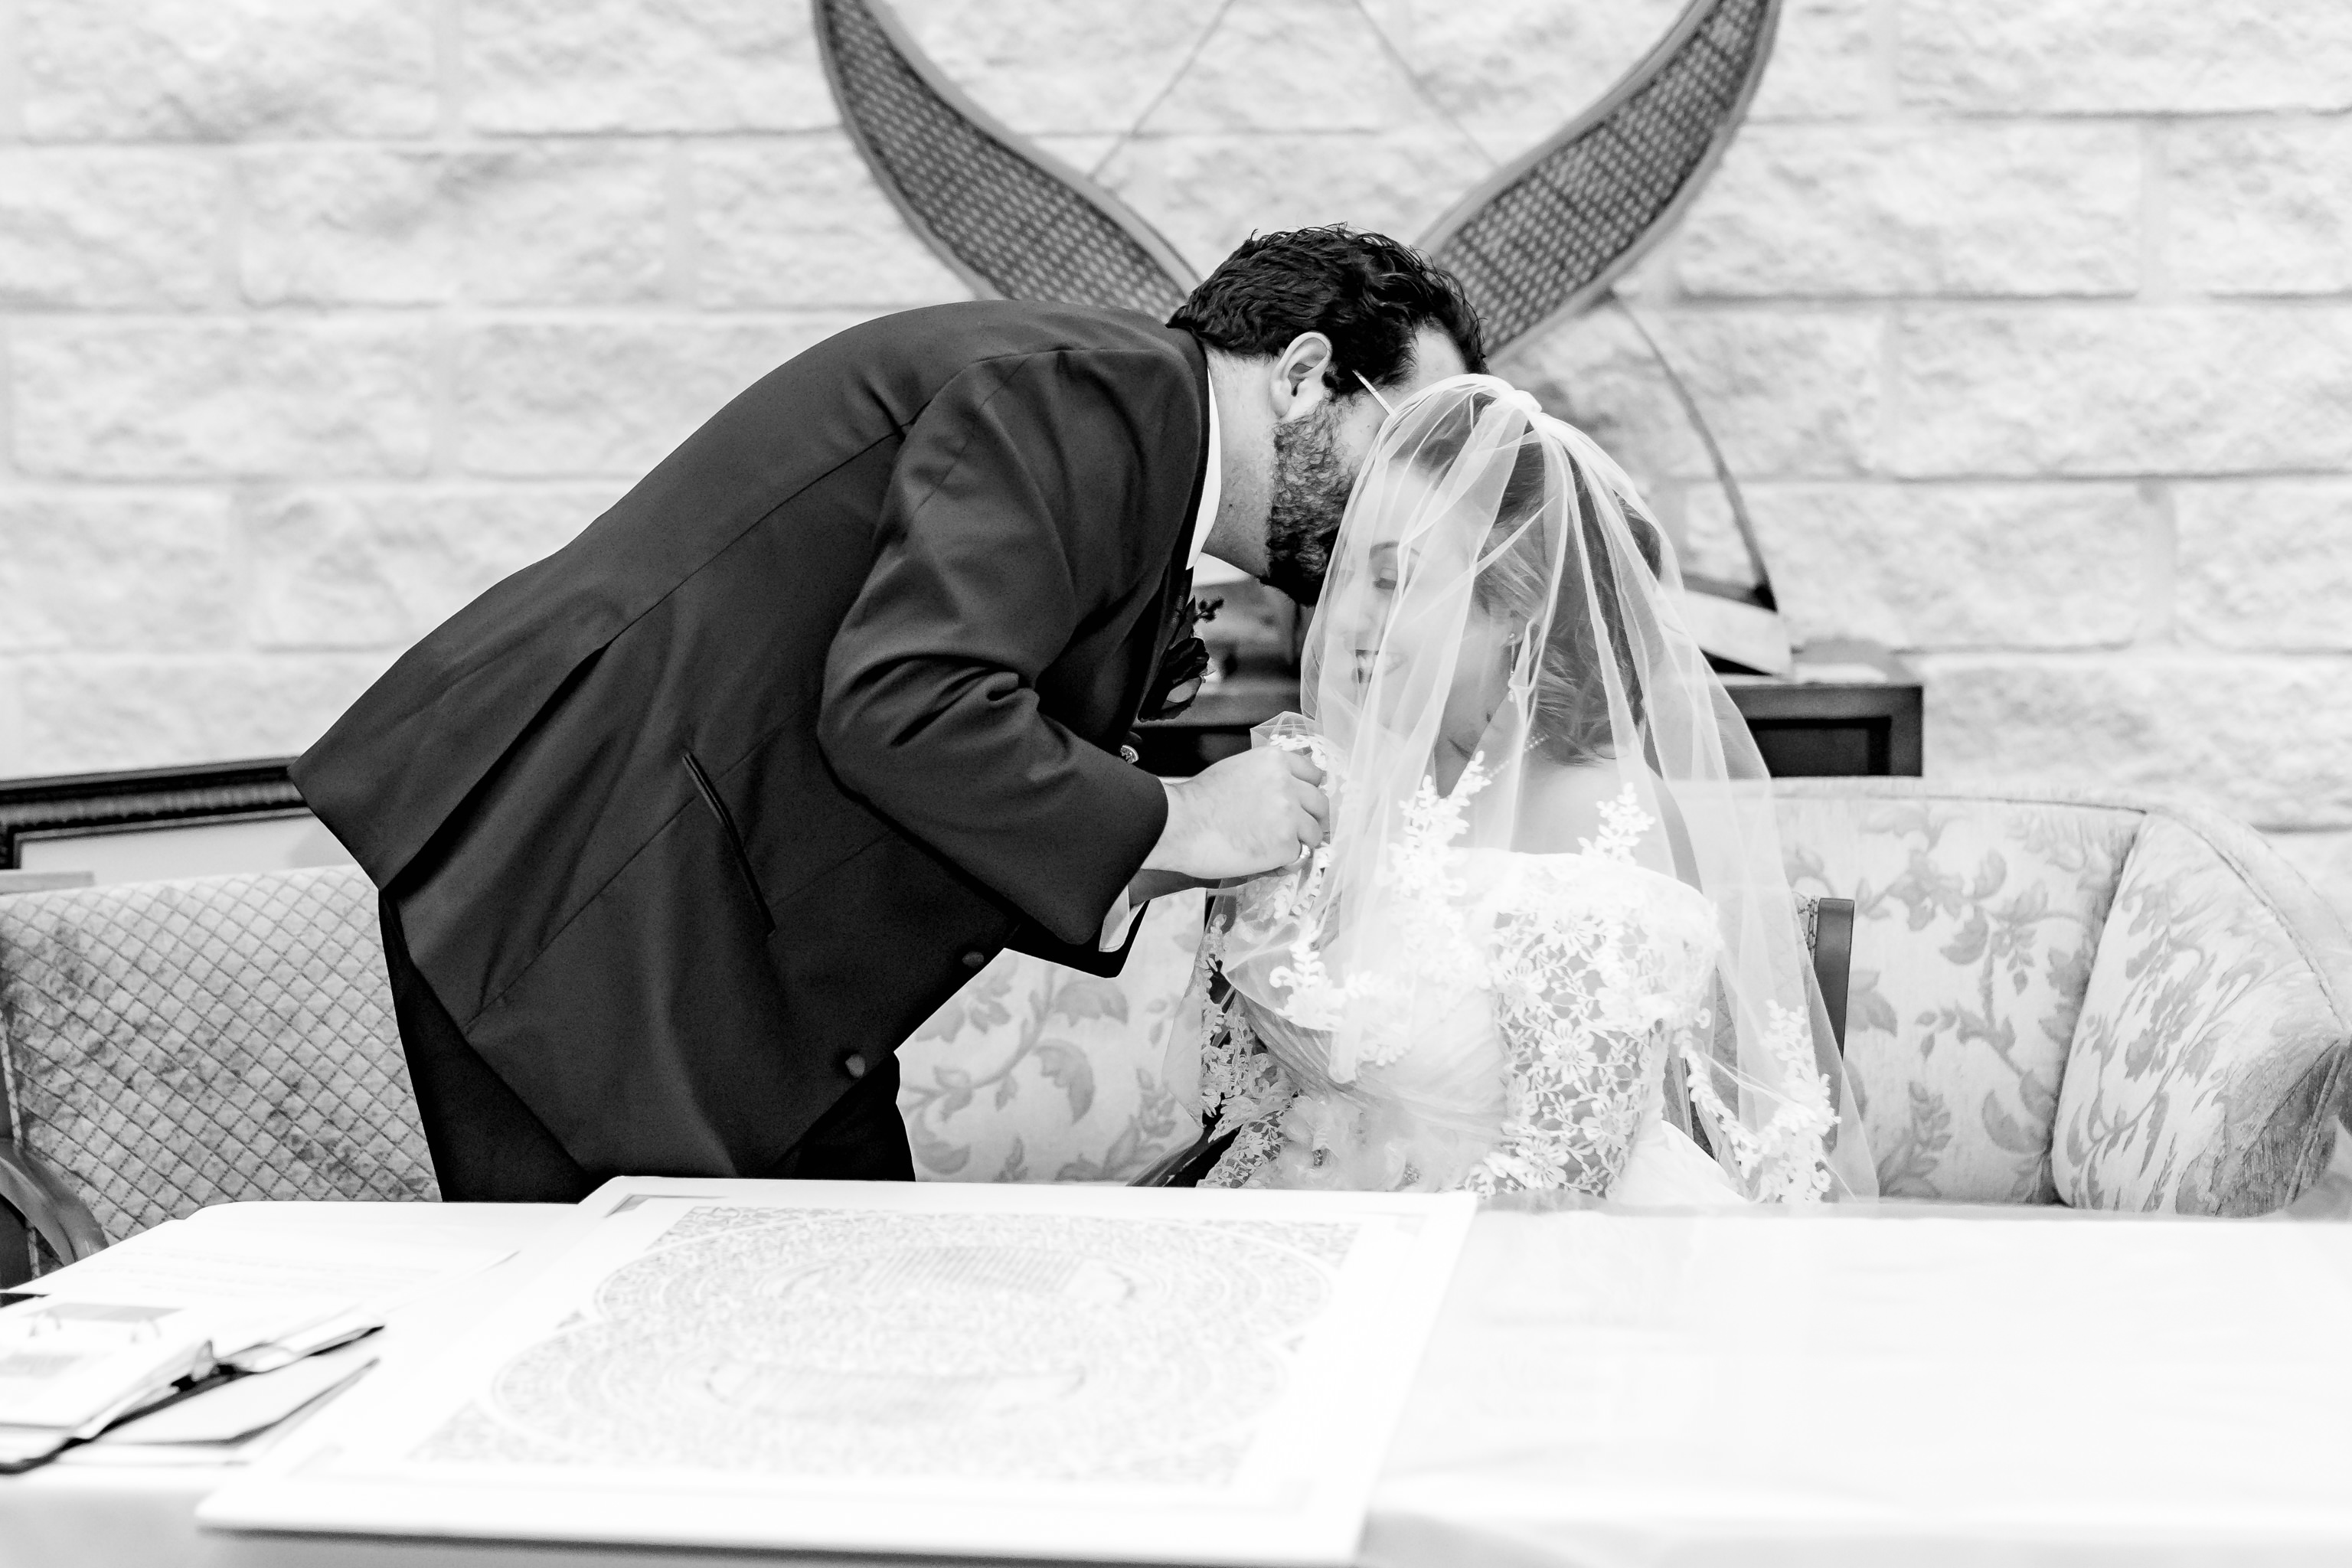 A Winter Wedding at Temple Beth-El in San Antonio, TX by Dawn Elizabeth Studios, San Antonio Wedding Photographer